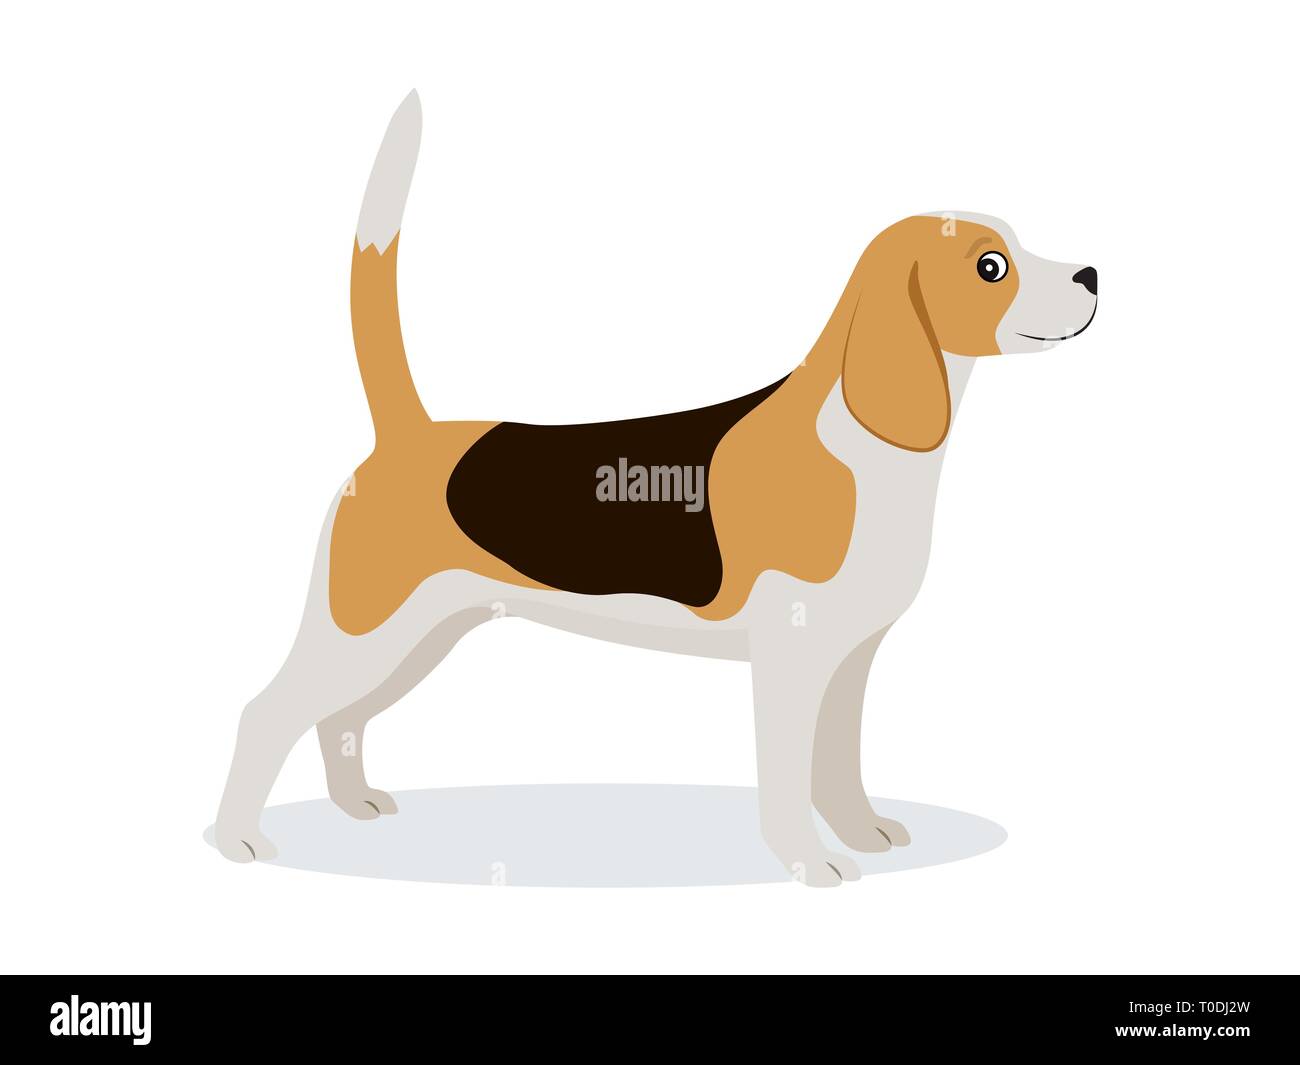 Süße beagle Icon, kleine Jagdhund mit weißen und braunen Pelz isoliert, Haustier, Vector Illustration Stock Vektor